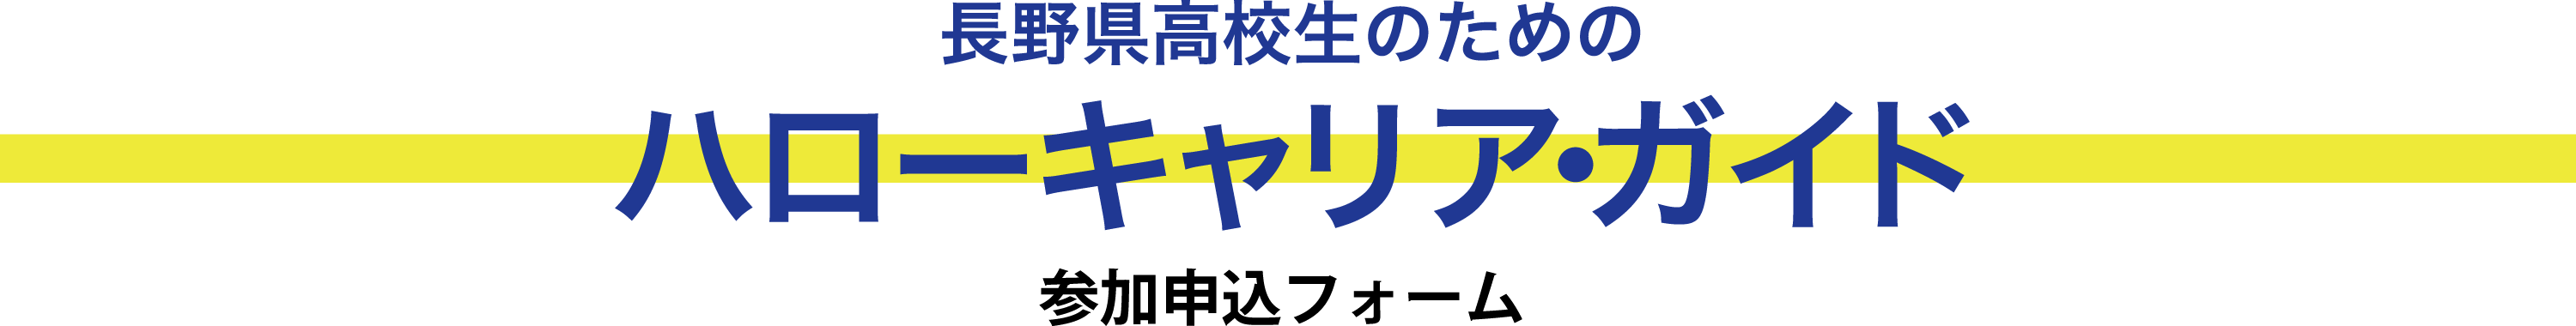 長野県高校生のためのハローキャリア･ガイド 参加申し込みフォーム